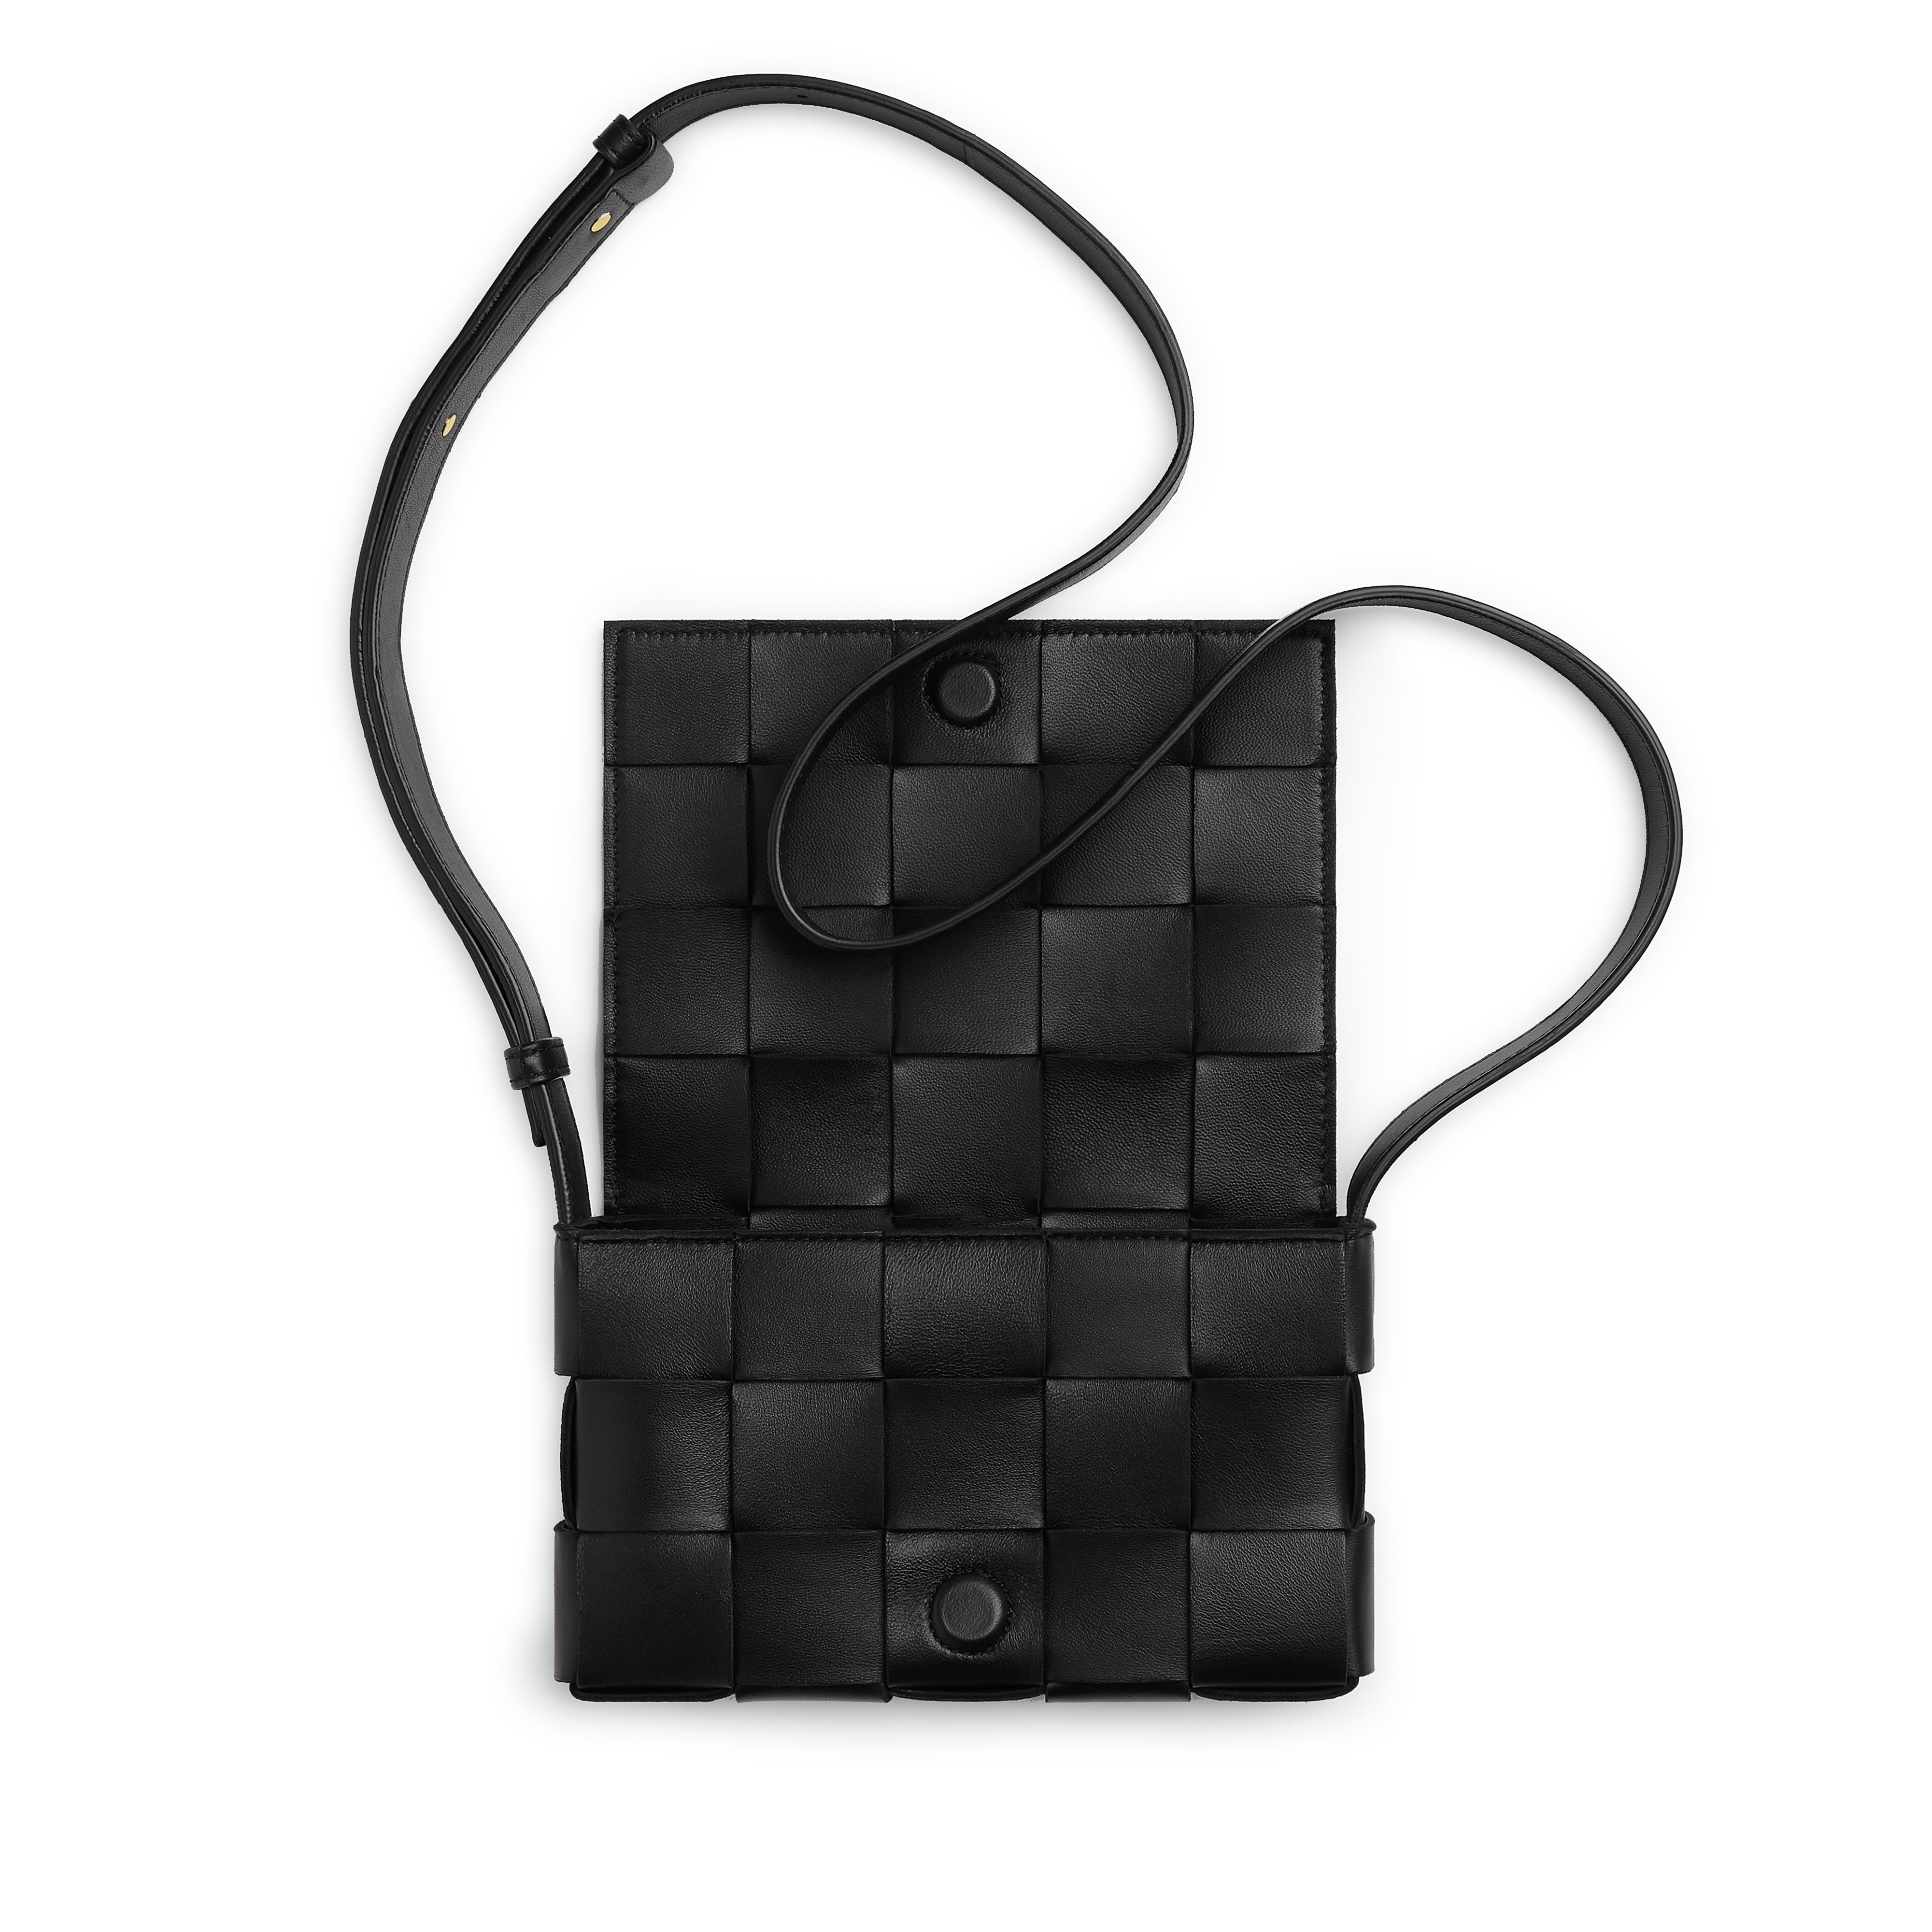 Bottega Veneta Black Small Cassette Bag